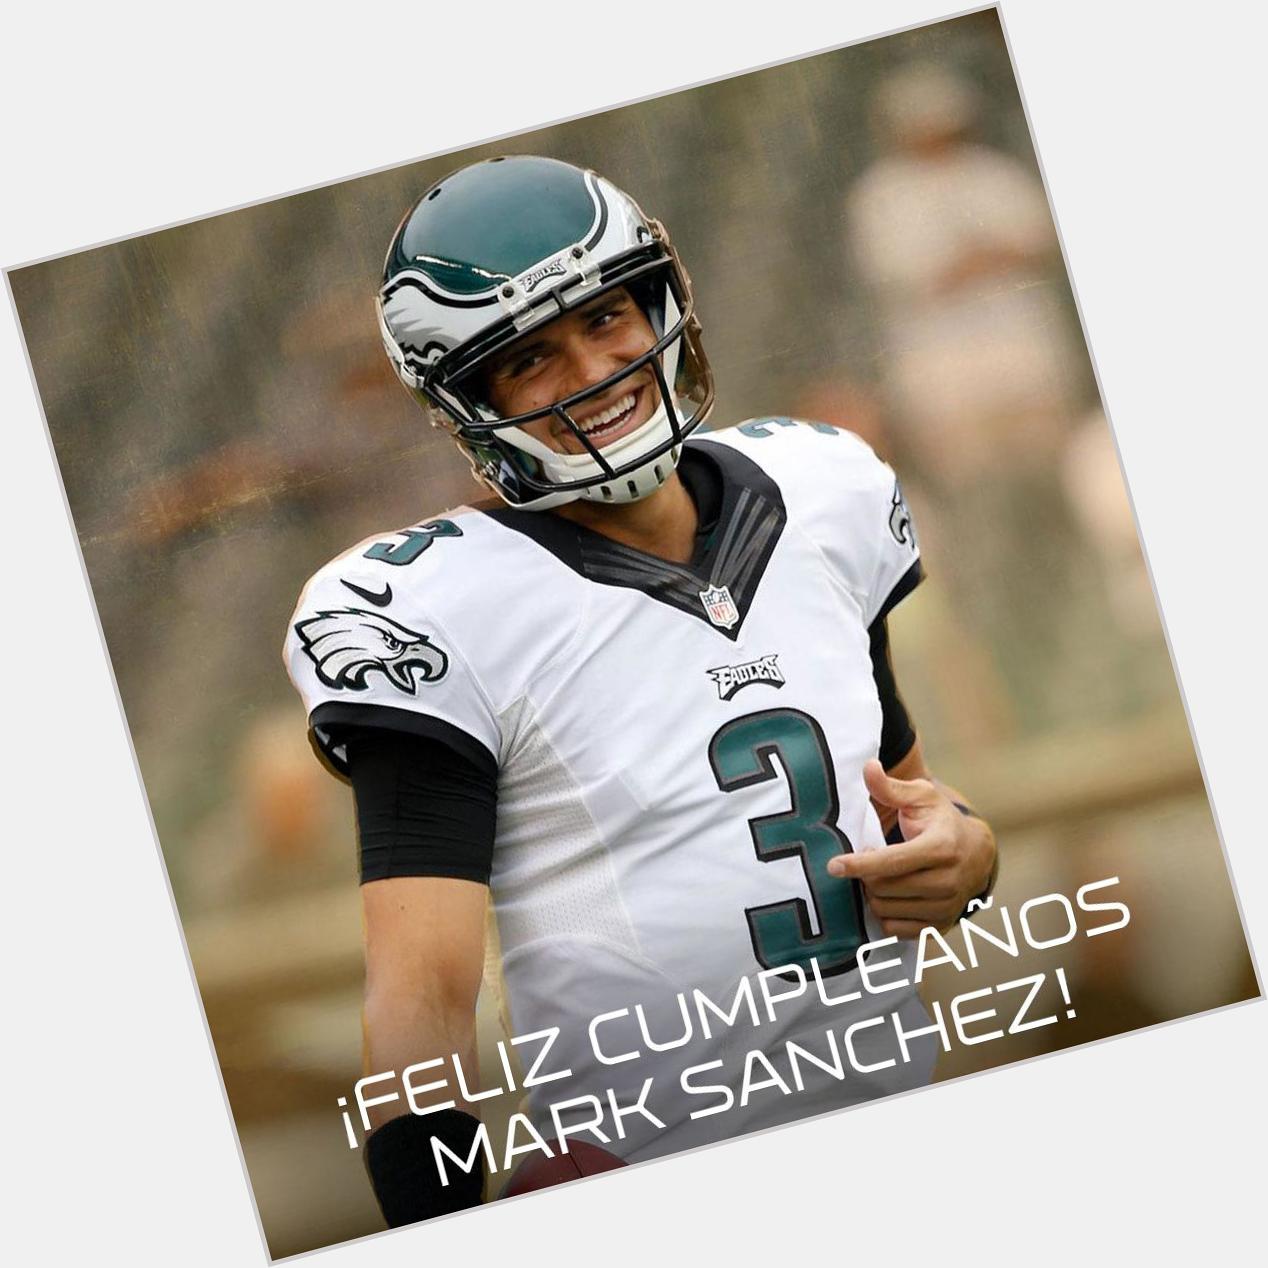 " ¡ Mark Sanchez!
  mmm ok ok no importa el equipo sino lo que logres en el happy birthday!